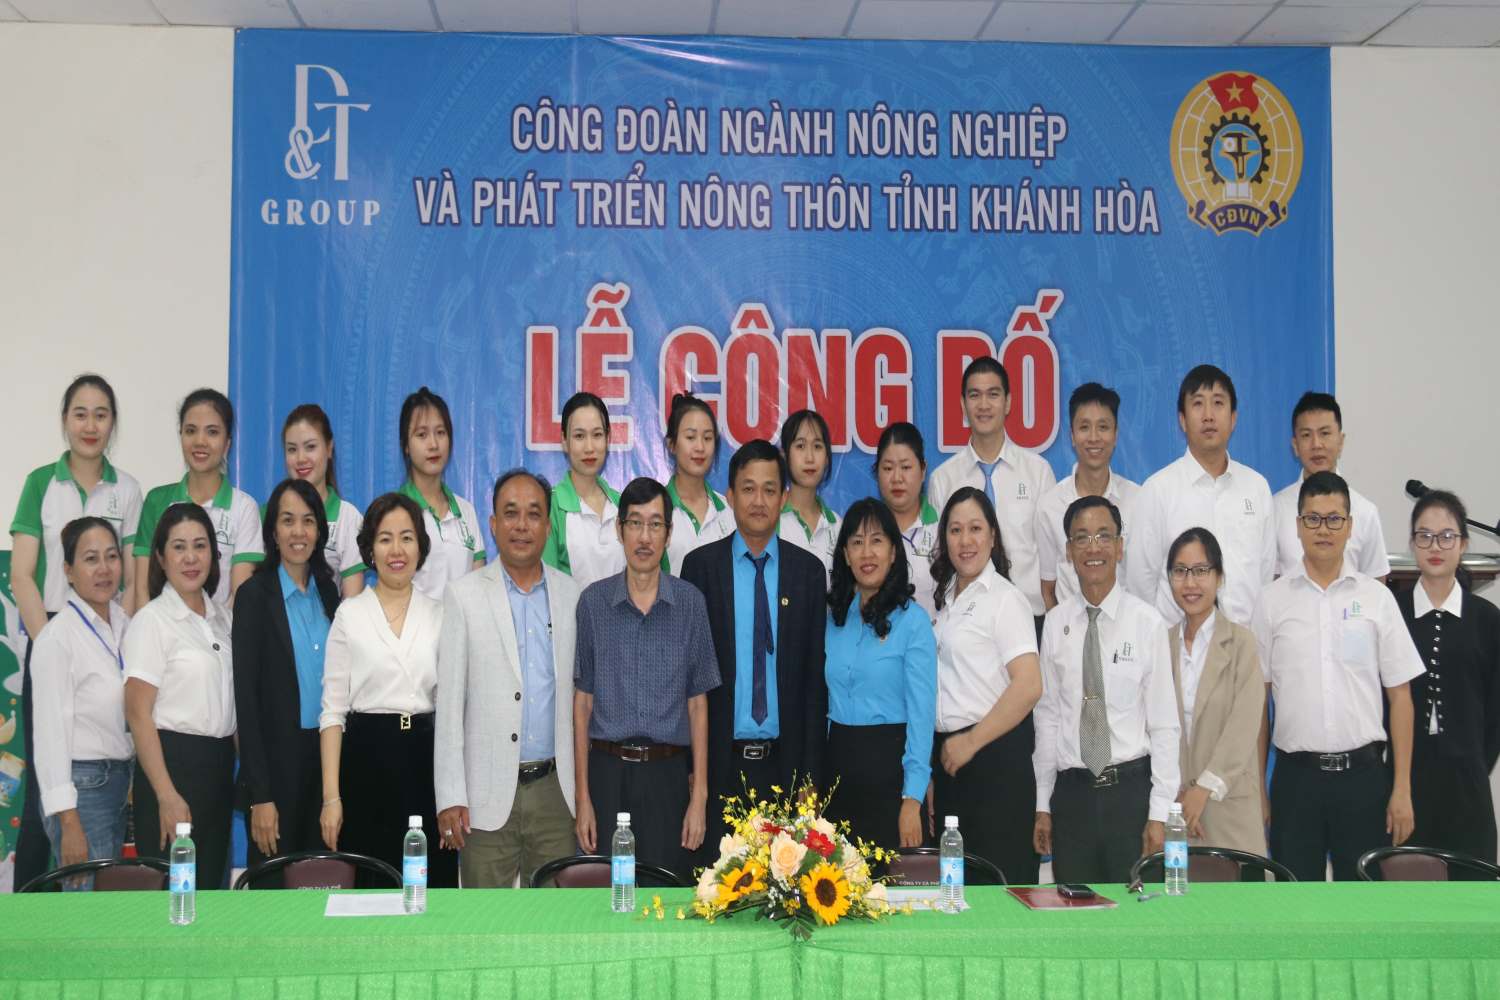 Lãnh đạo Sở NN&PTNT tỉnh Khánh Hòa chúc mừng đoàn viên, NLĐ và lãnh đạo Công ty đã thành lập được CĐCS. Ảnh: P.Linh